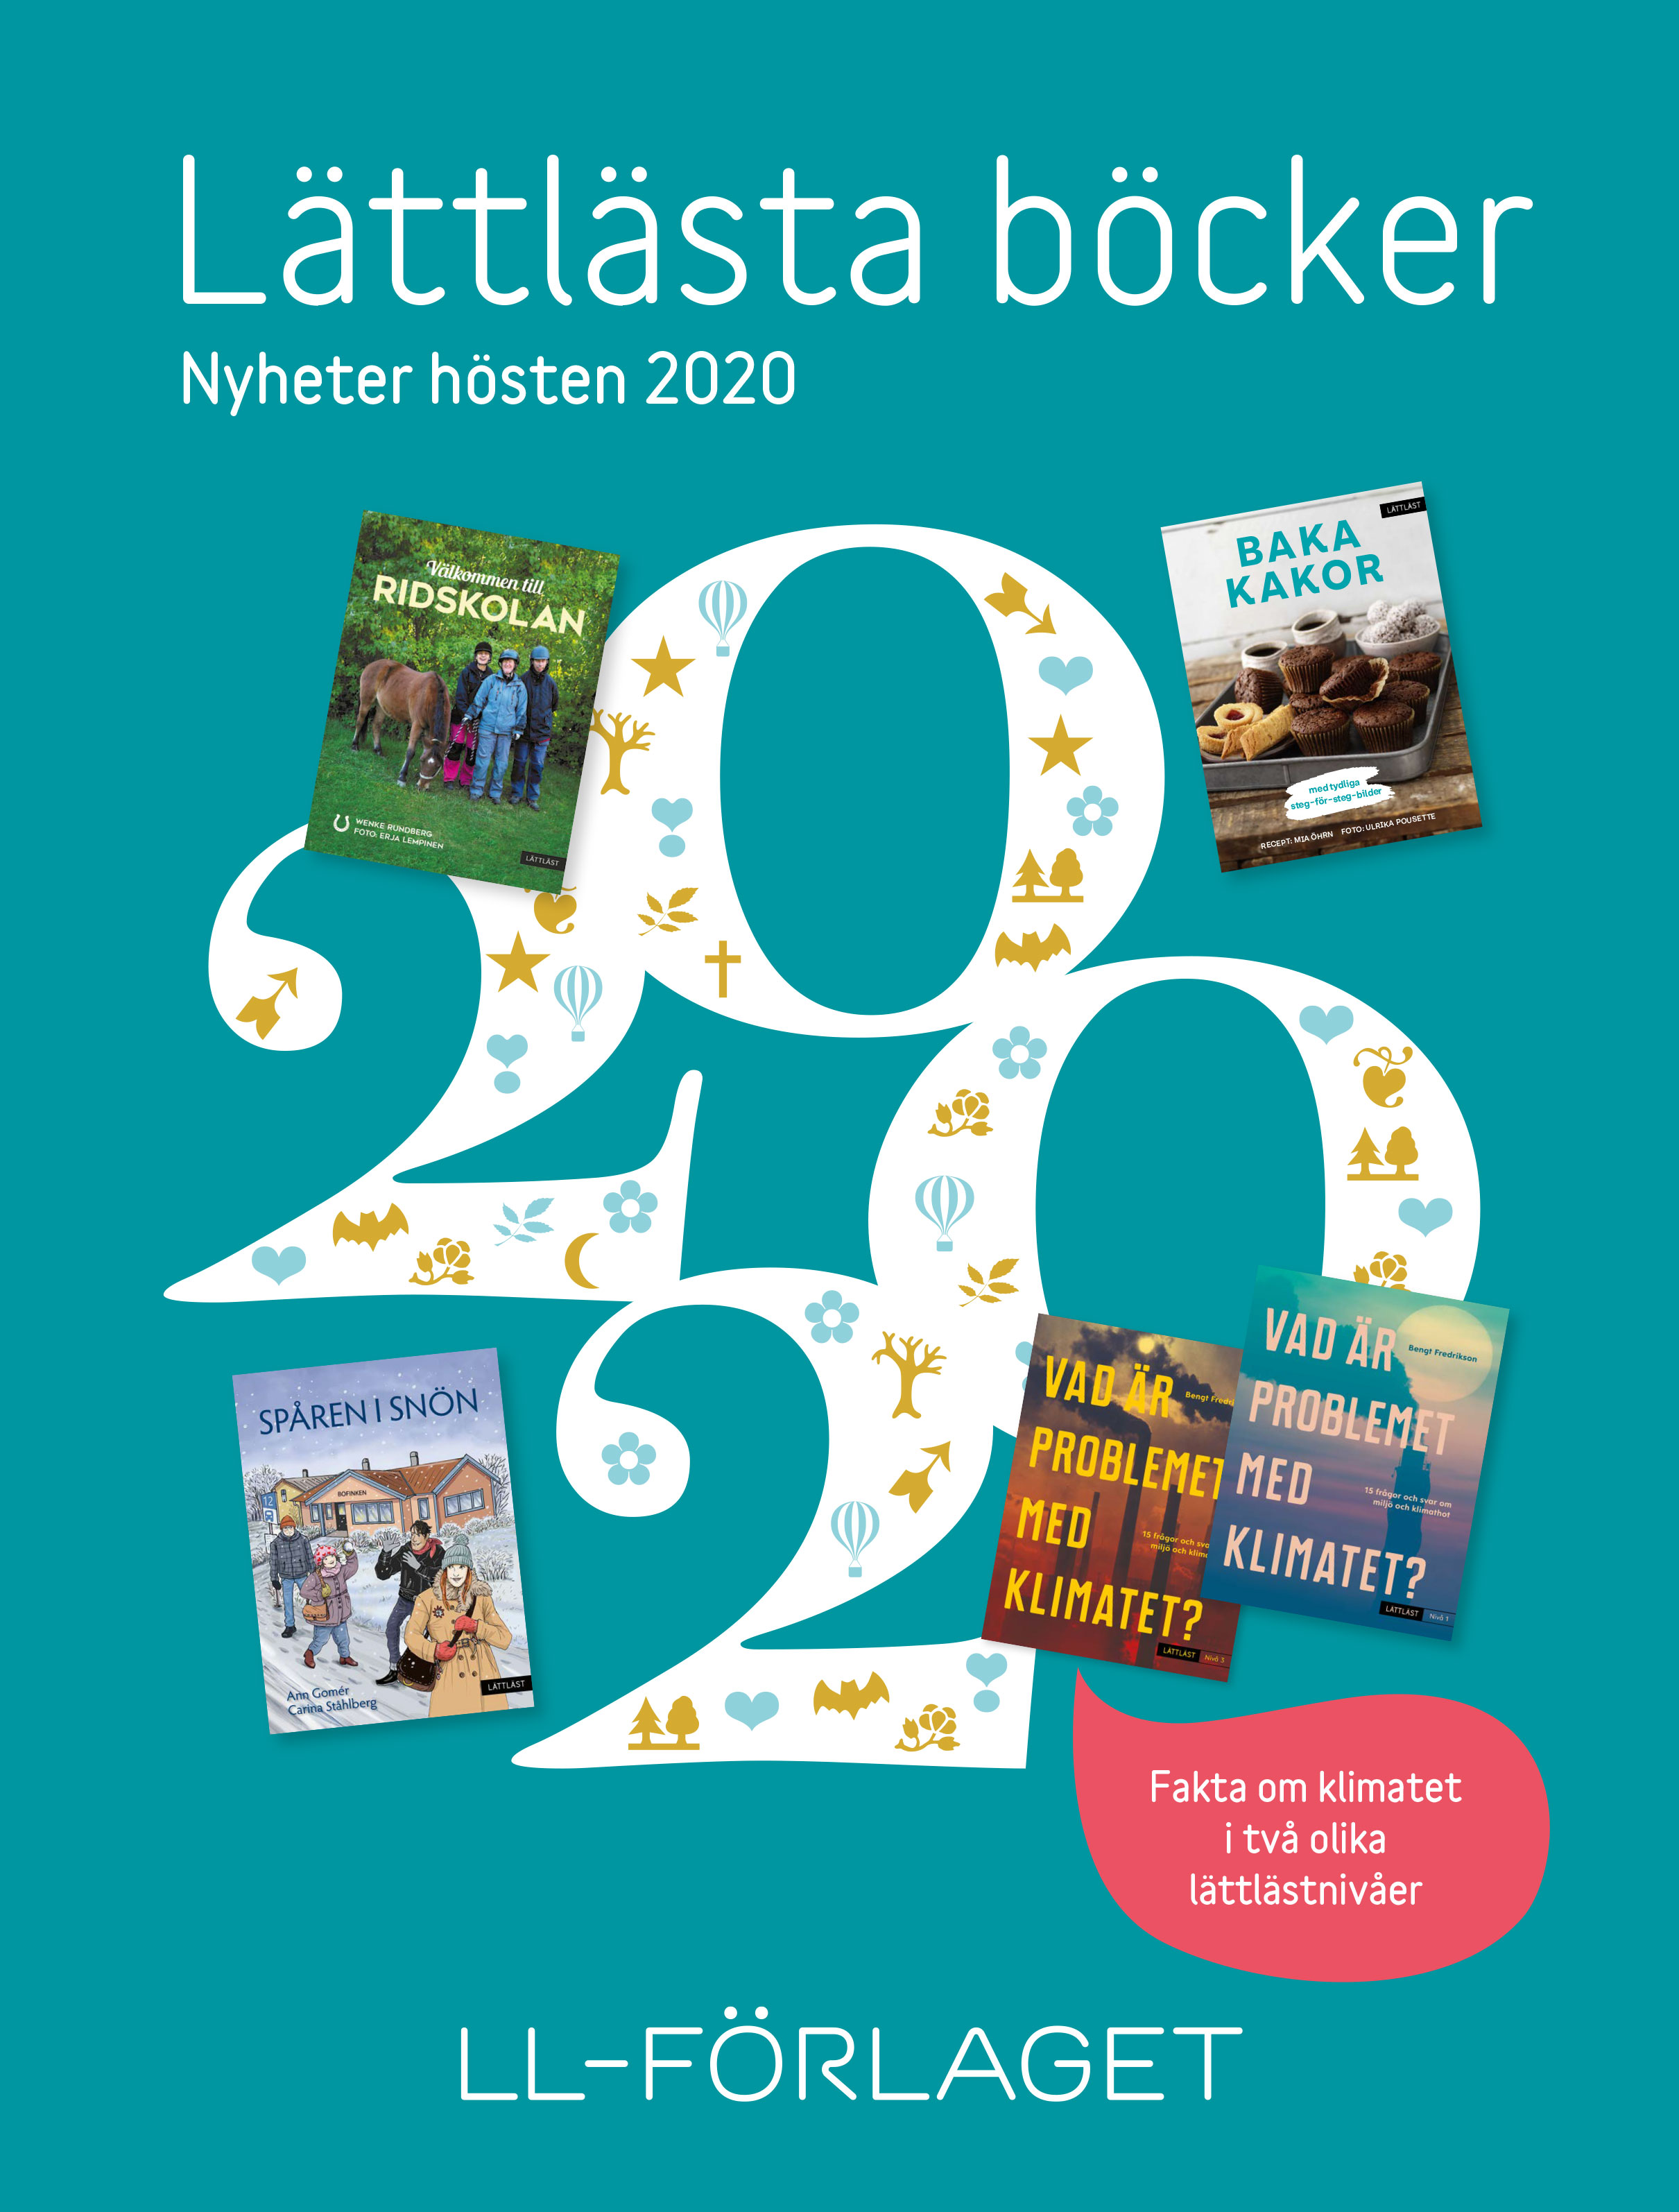 Bild på omslaget till LL-förlagets boknyheter hösten 2020.